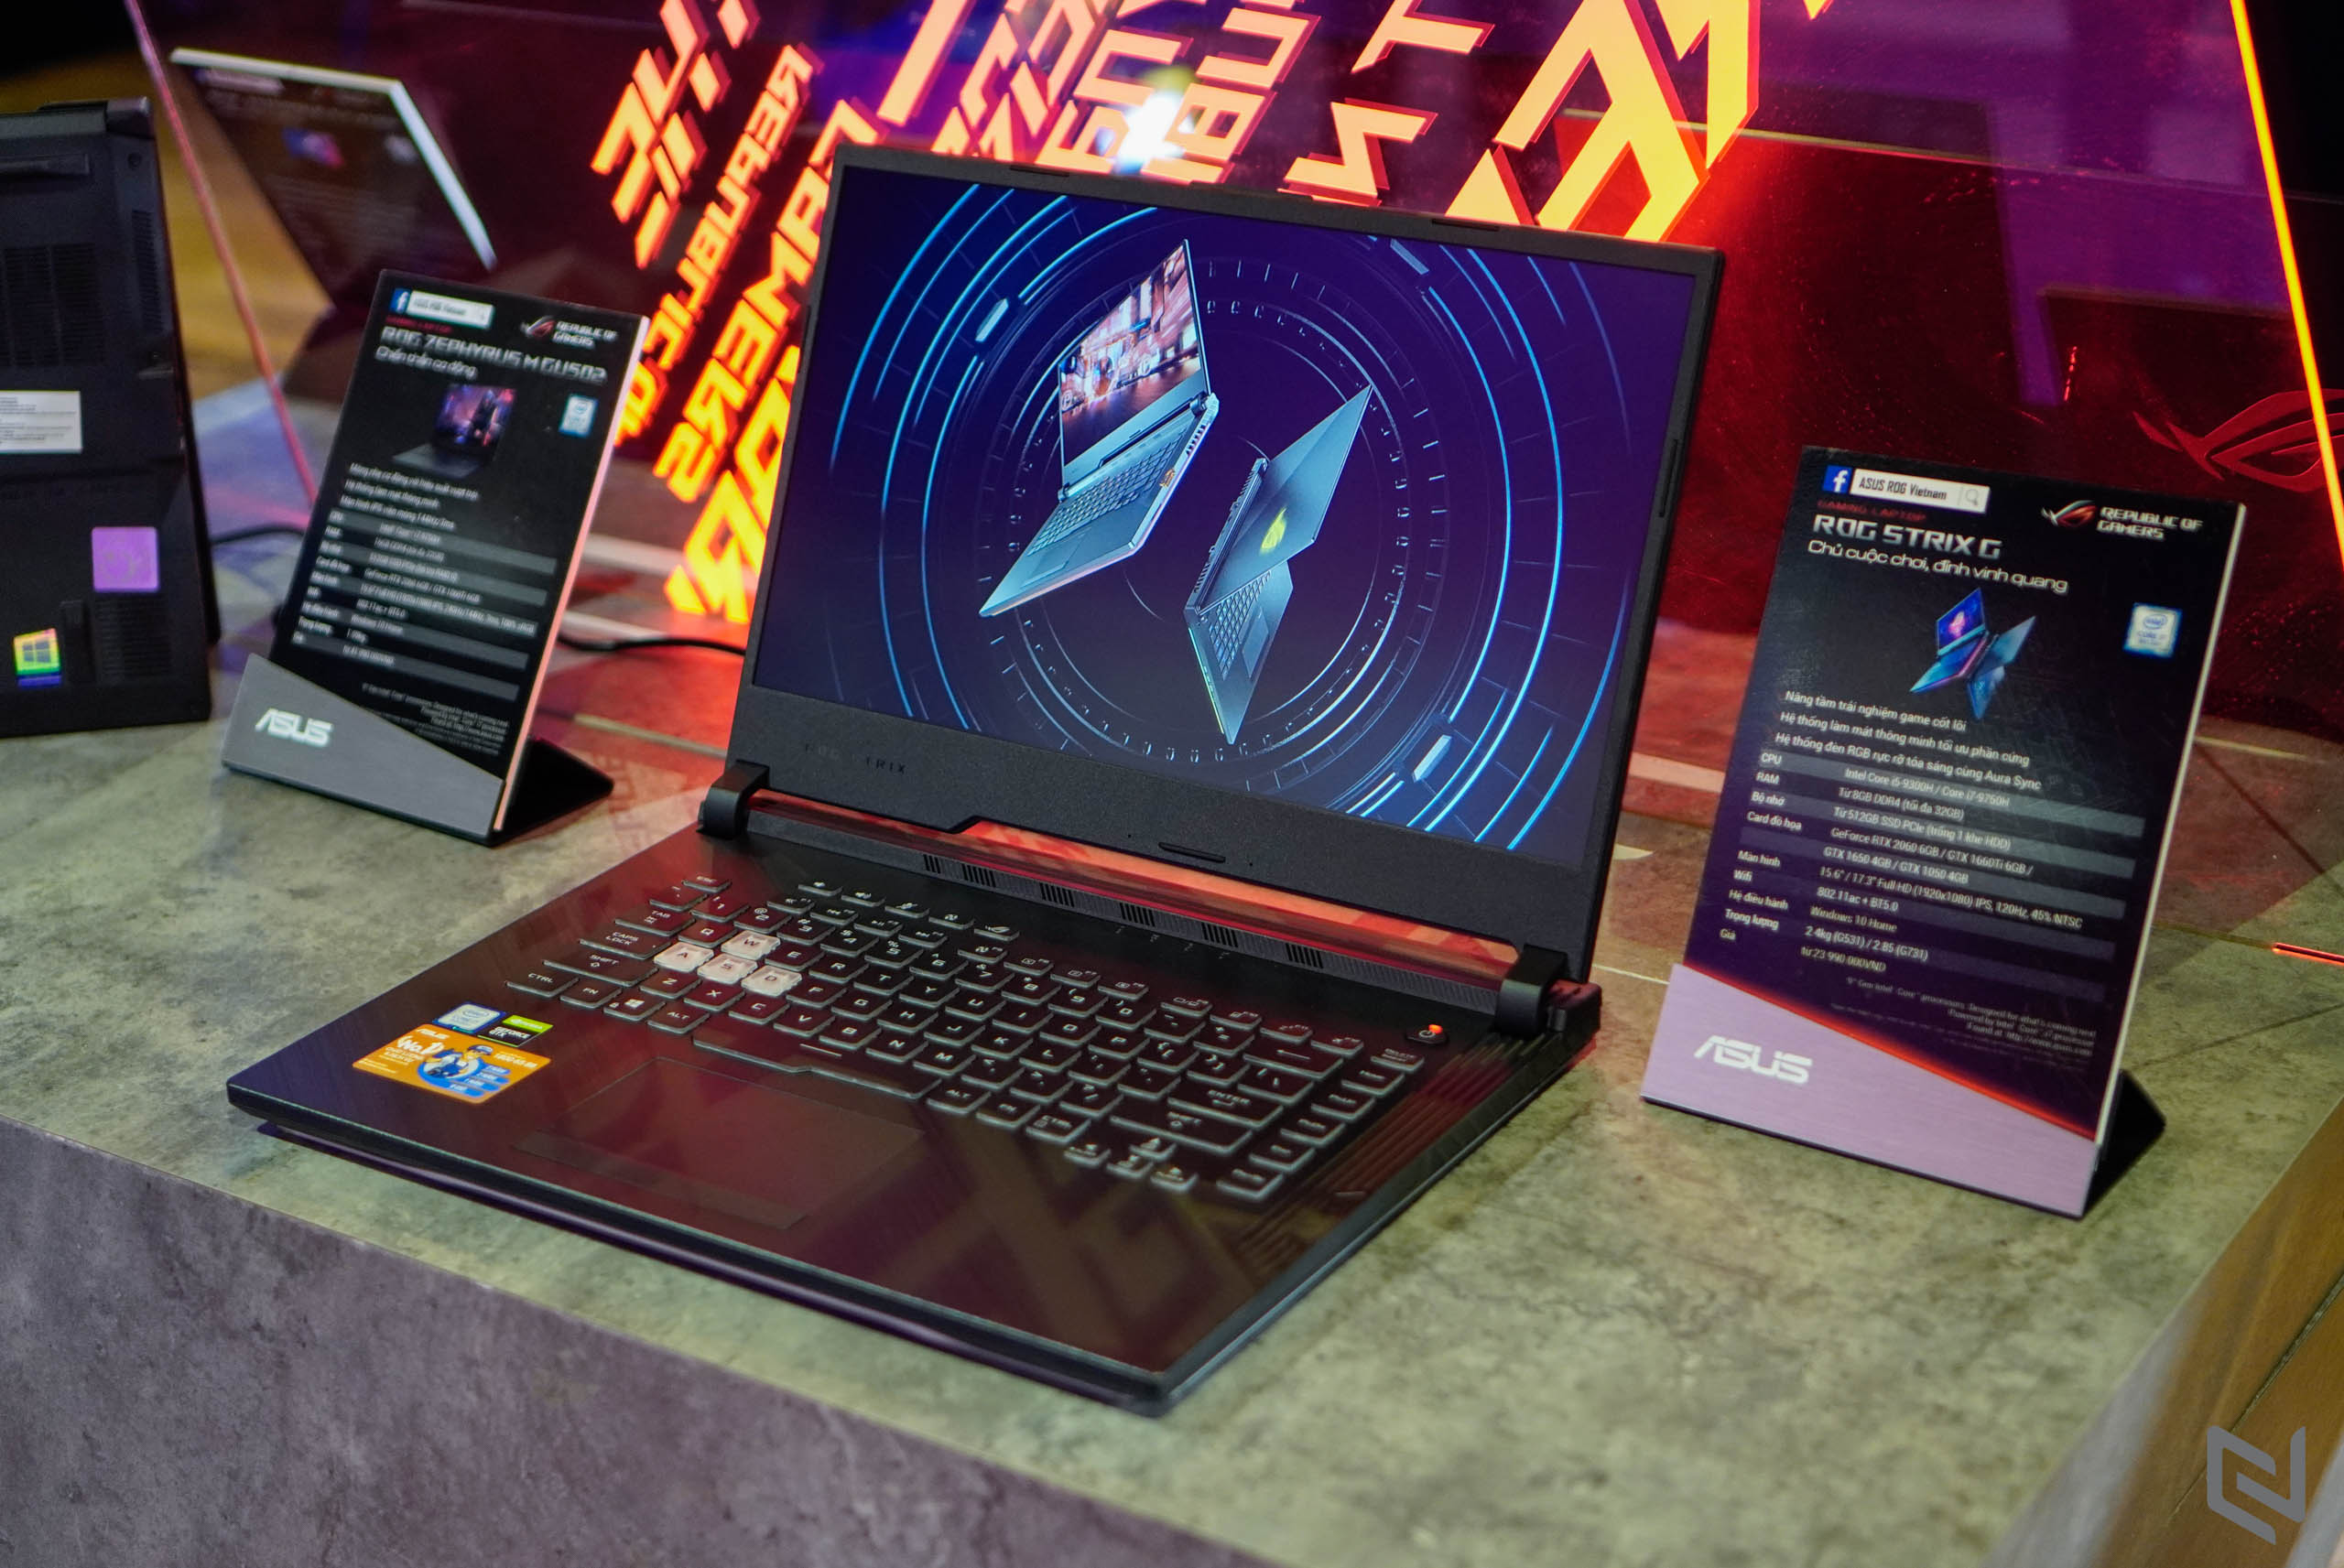 ASUS ROG công bố dải laptop gaming trang bị CPU Intel Core thế hệ 9 tại sự kiện BE UNSTOPPABLE